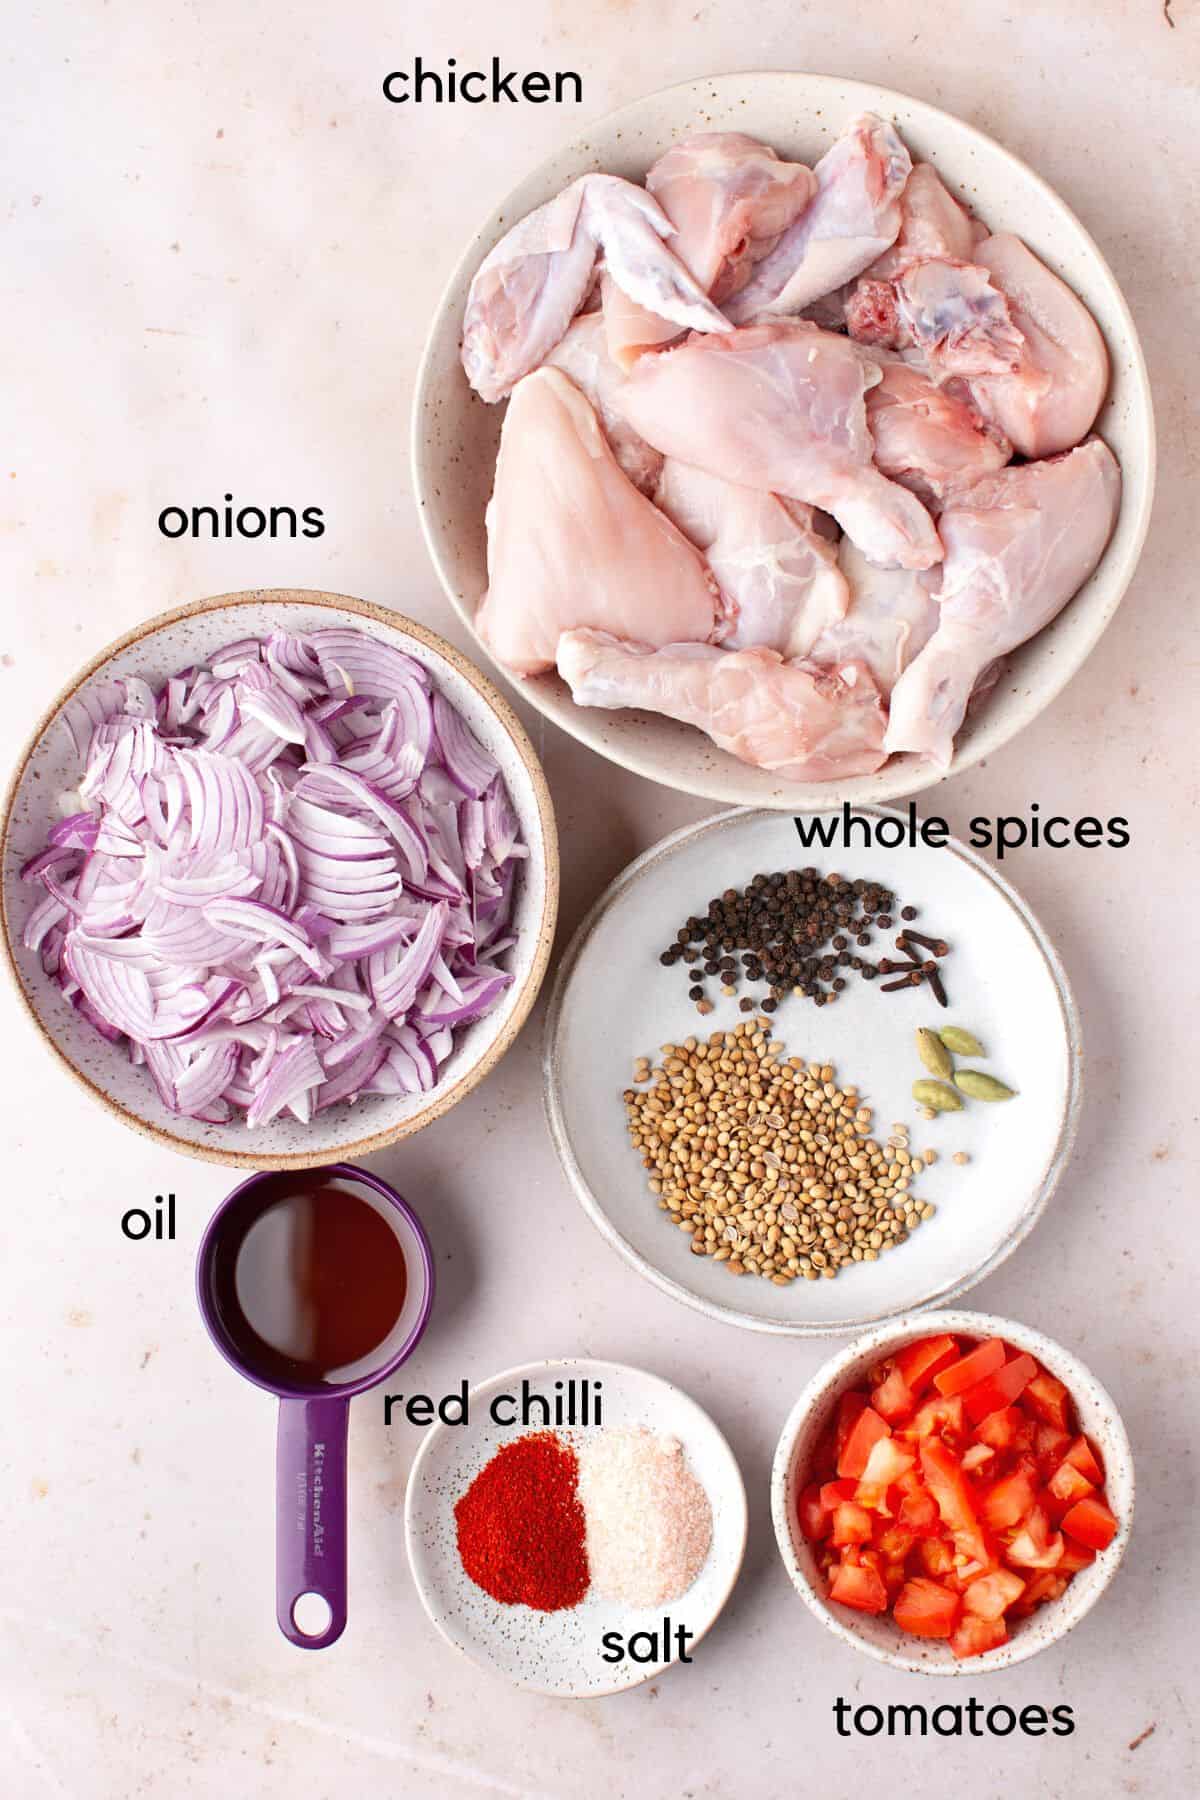 Chicken bhuna ingredients labelled.